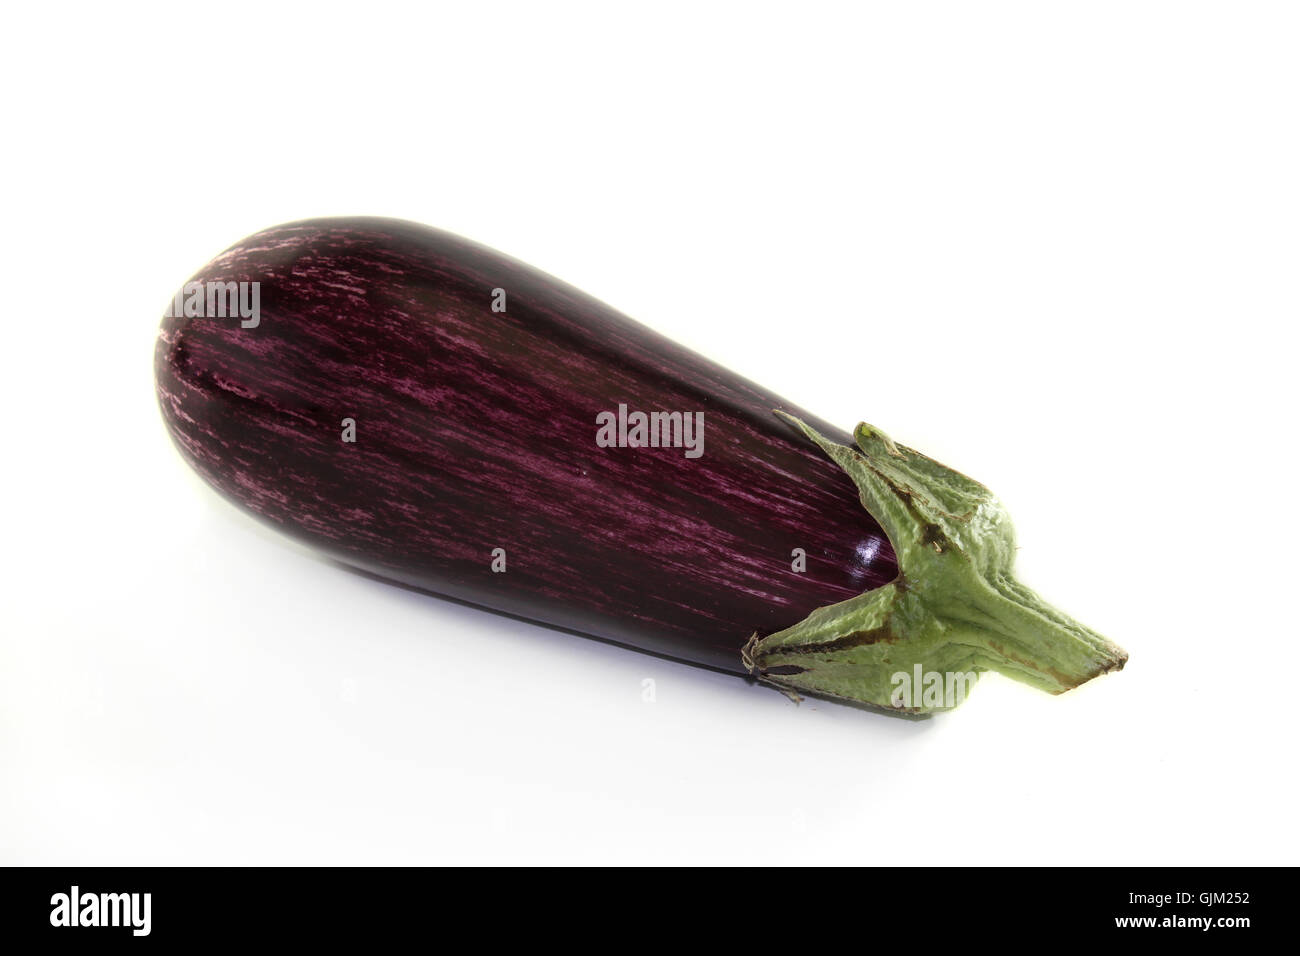 eggplant Stock Photo